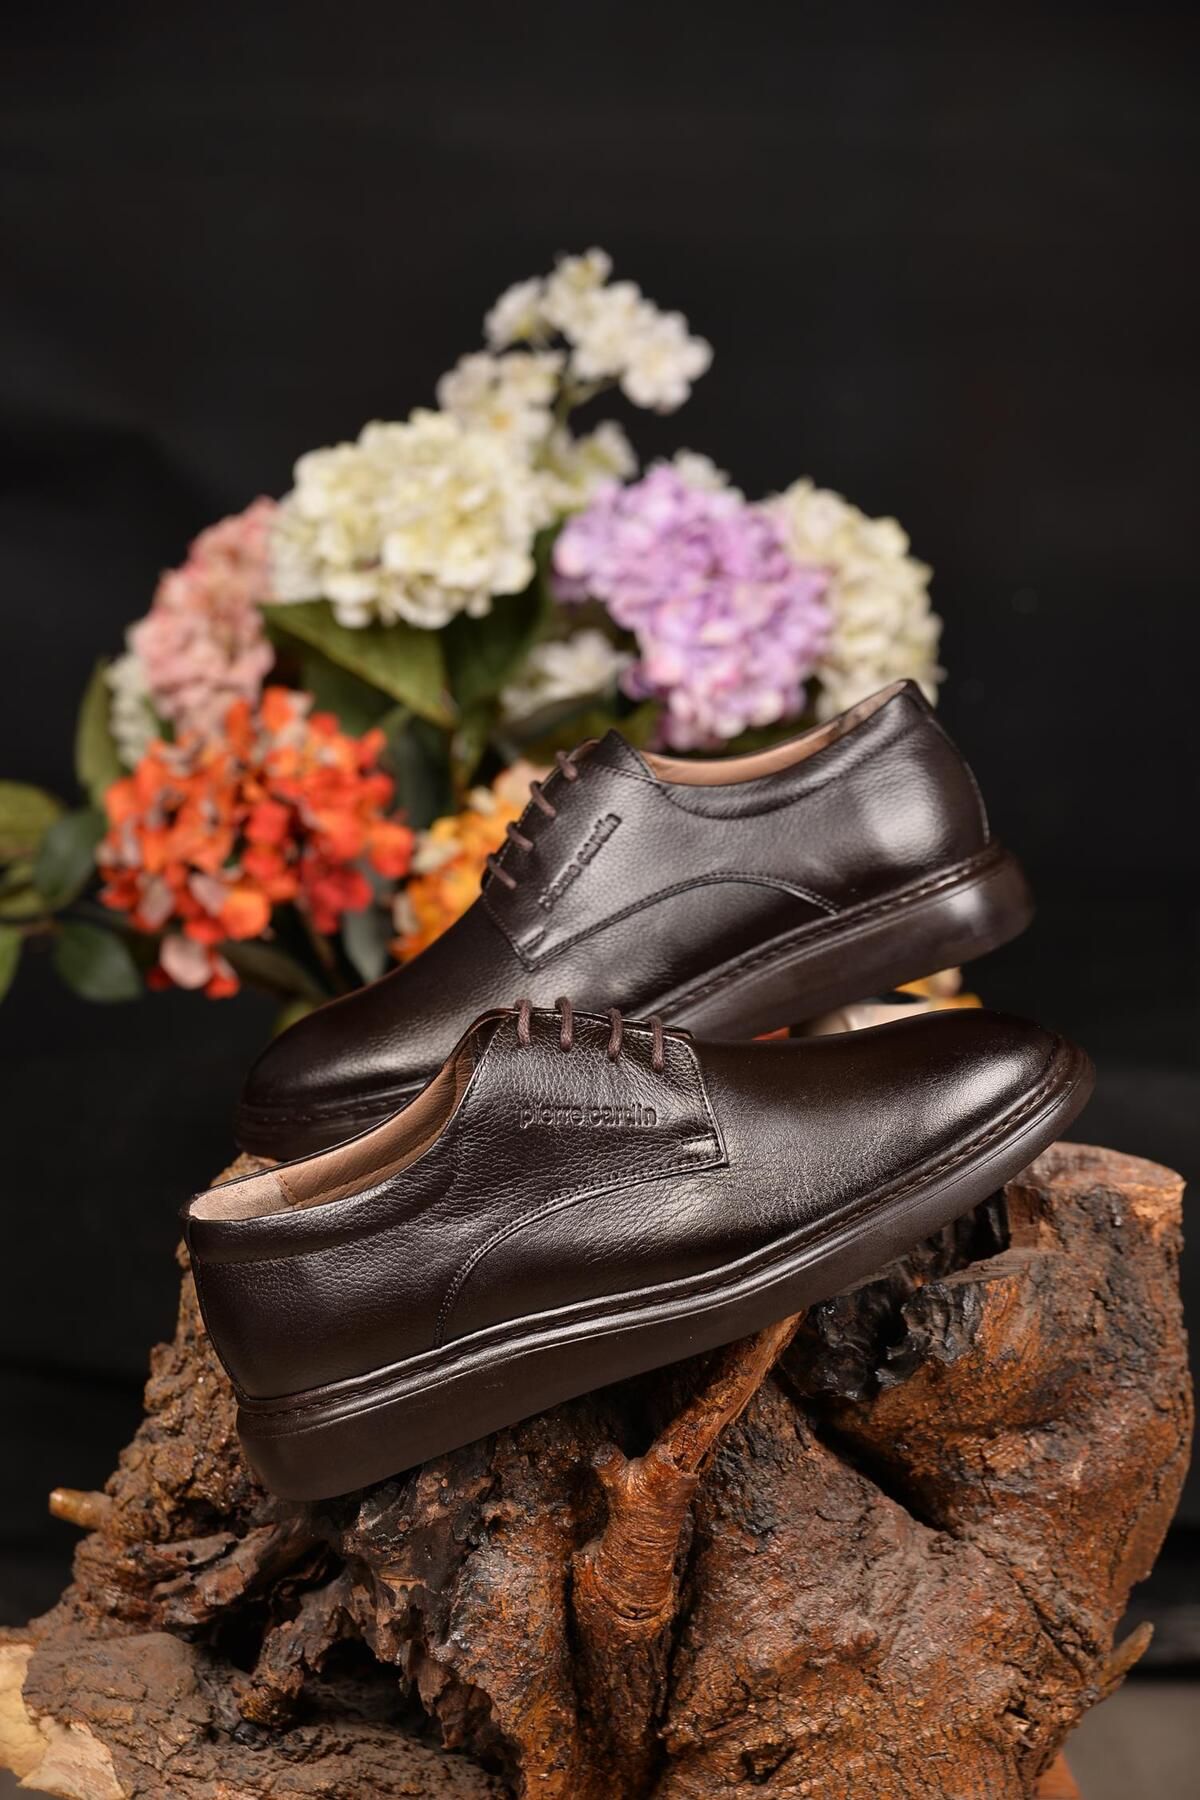 Pierre Cardin Erkek %100Deri Kahve Casual Ayakkabı Yenilikçi Tarzıyla Şıklığı Ve Konforu BirArada Sunan Tarz Model